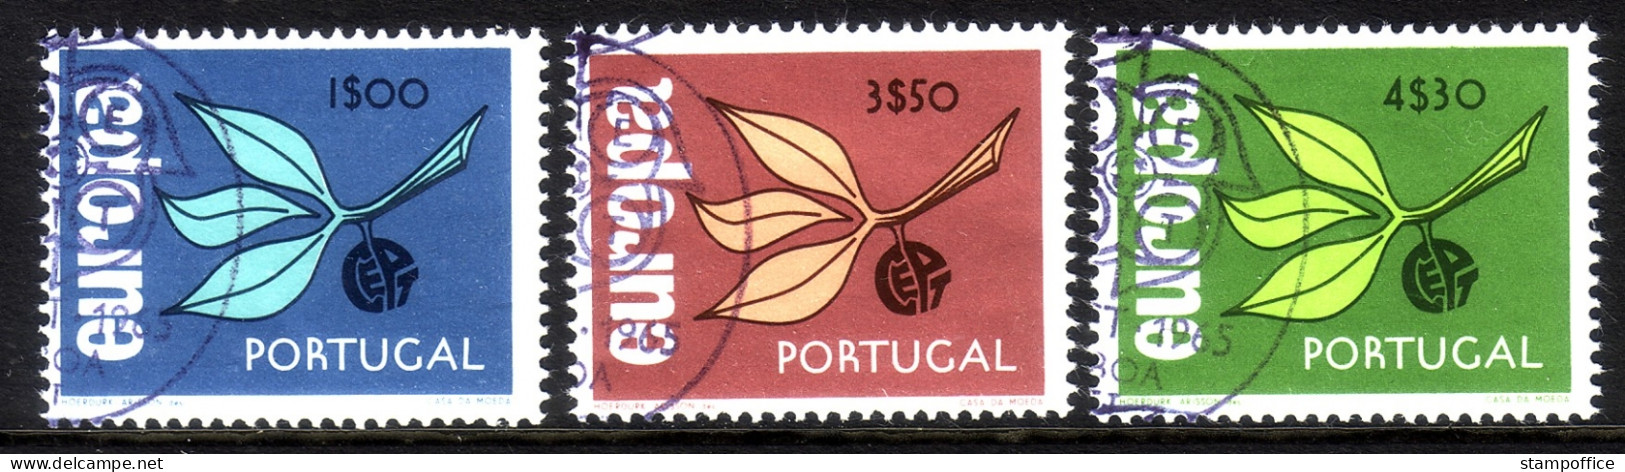 PORTUGAL MI-NR. 990-992 GESTEMPELT(USED) EUROPA 1965 ZWEIG - 1965